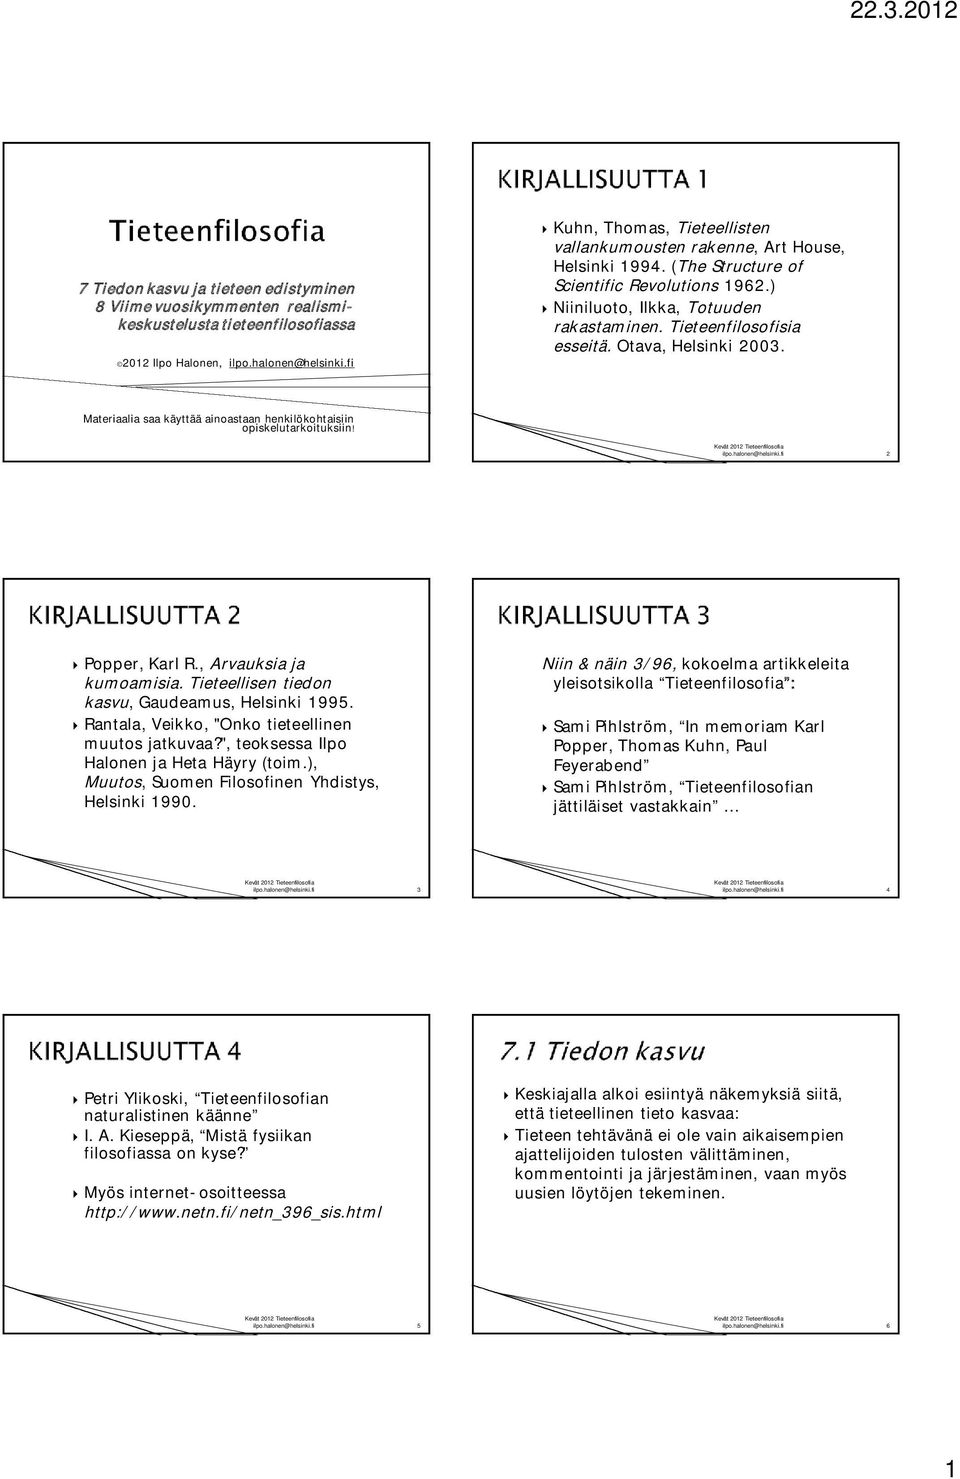 Materiaalia saa käyttää ainoastaan henkilökohtaisiin opiskelutarkoituksiin! 2 Popper, Karl R., Arvauksia ja kumoamisia. Tieteellisen tiedon kasvu, Gaudeamus, Helsinki 1995.